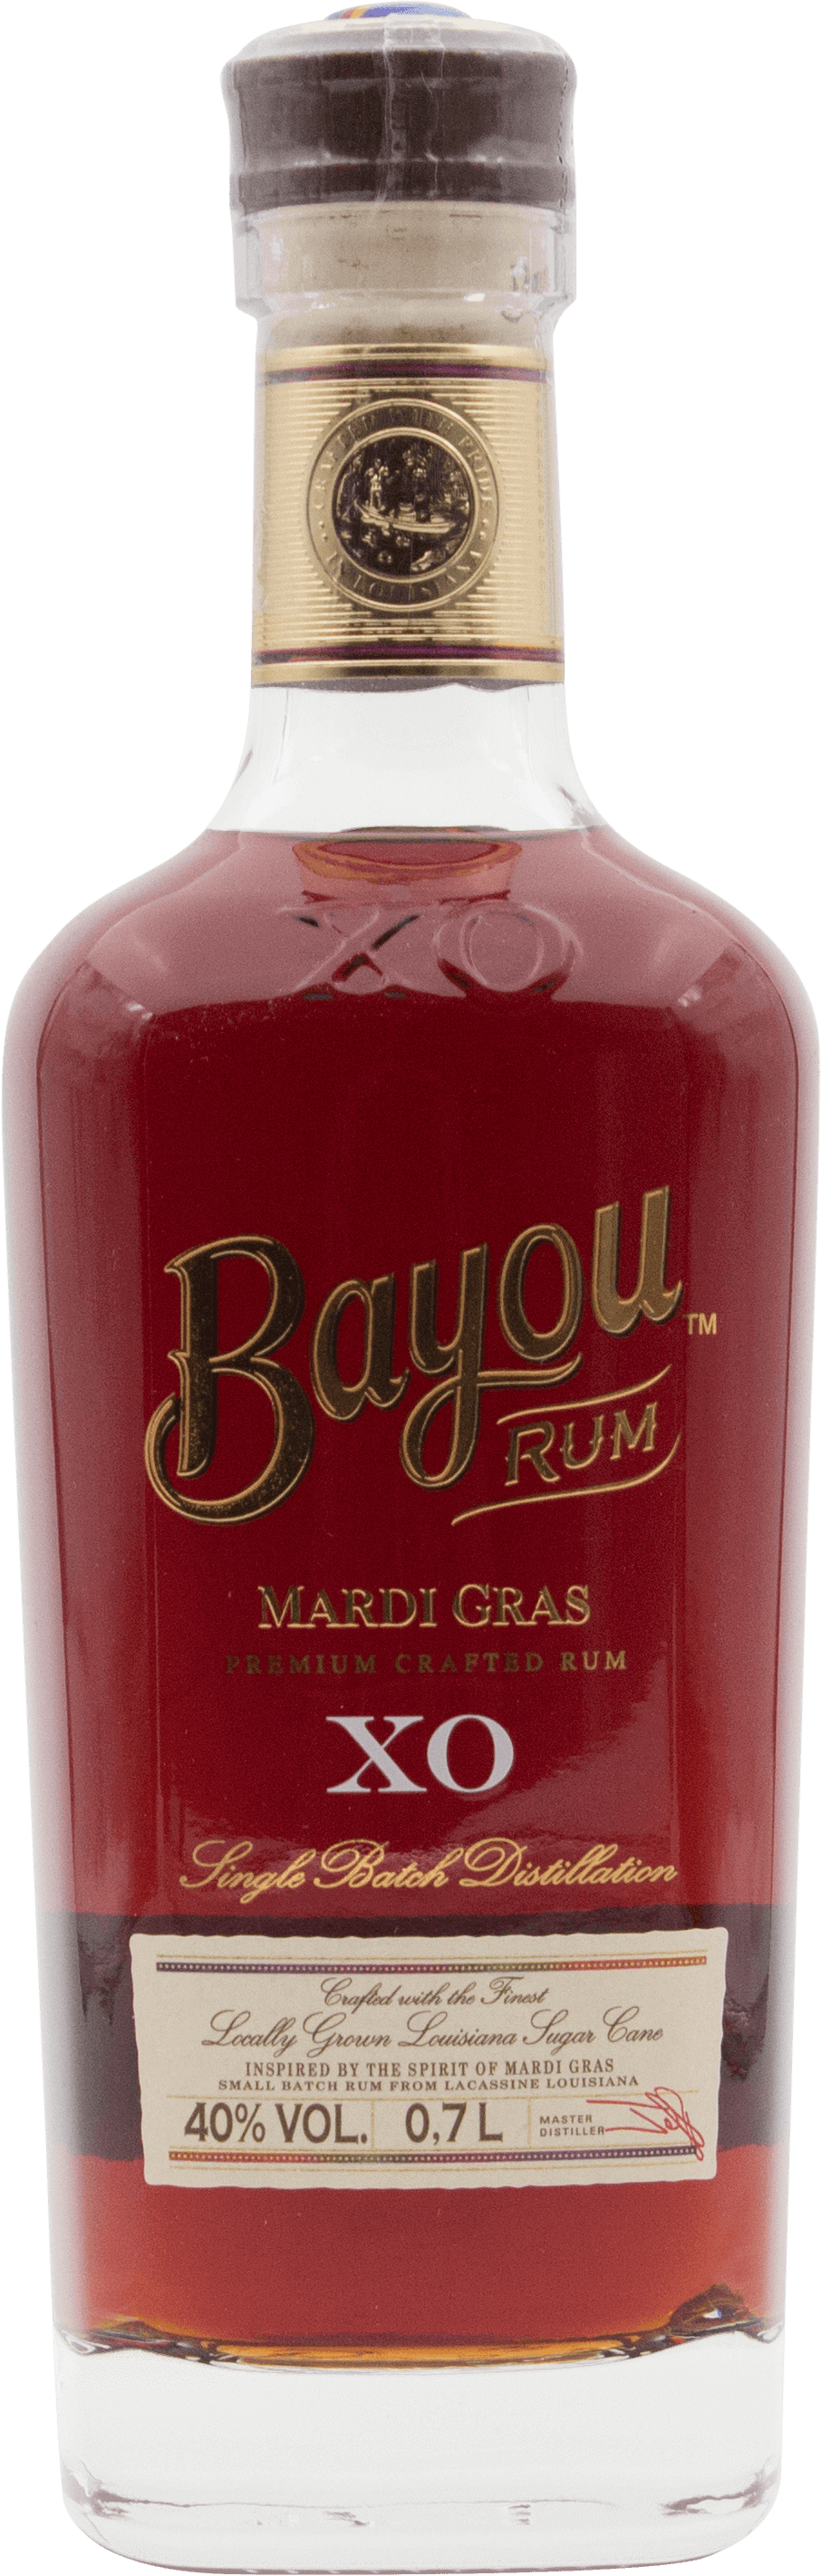 Bayou Rum Mardi Gras XO